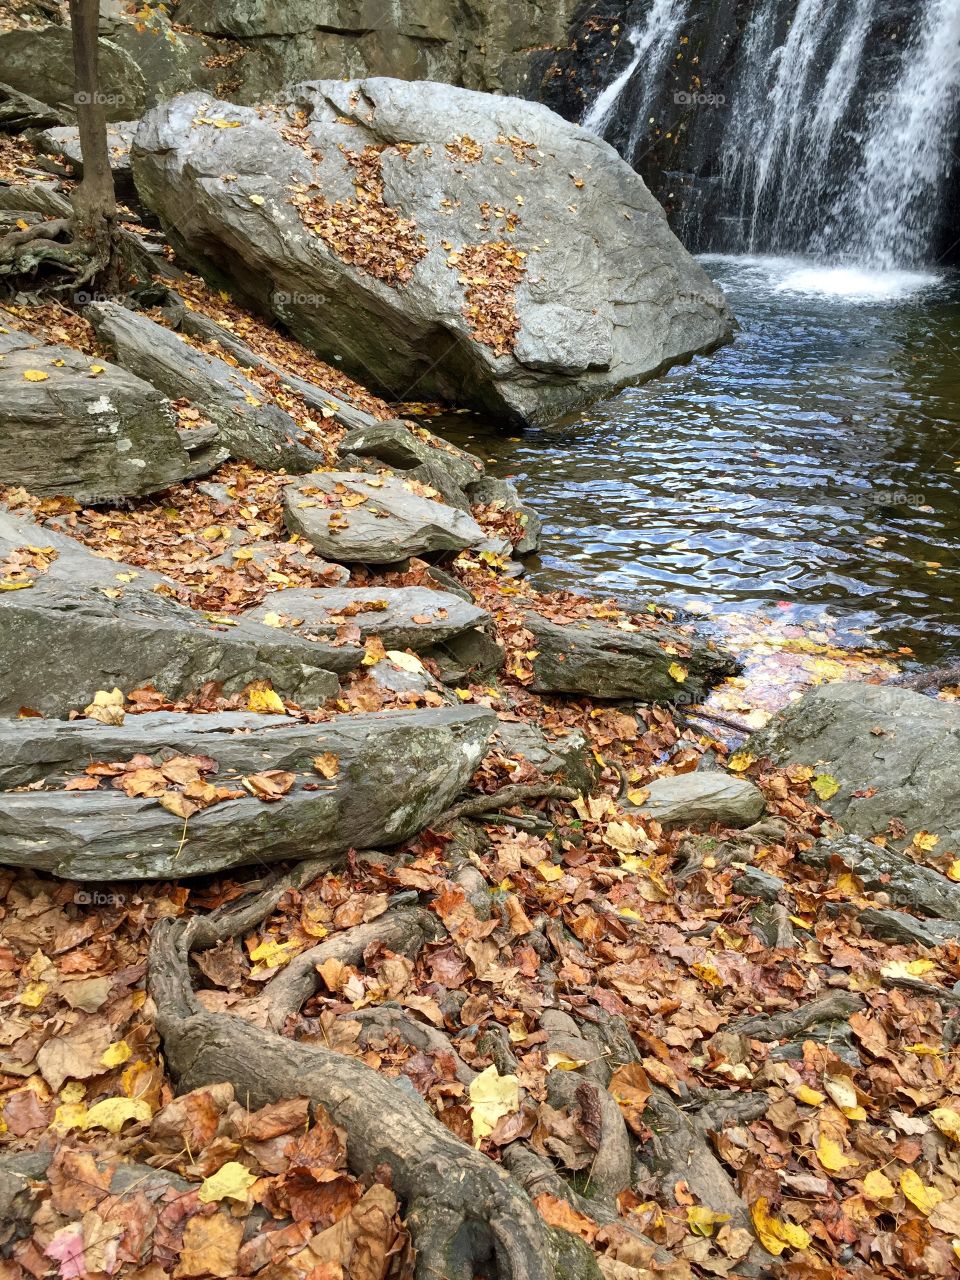 Fall foliage at Kilgore Falls